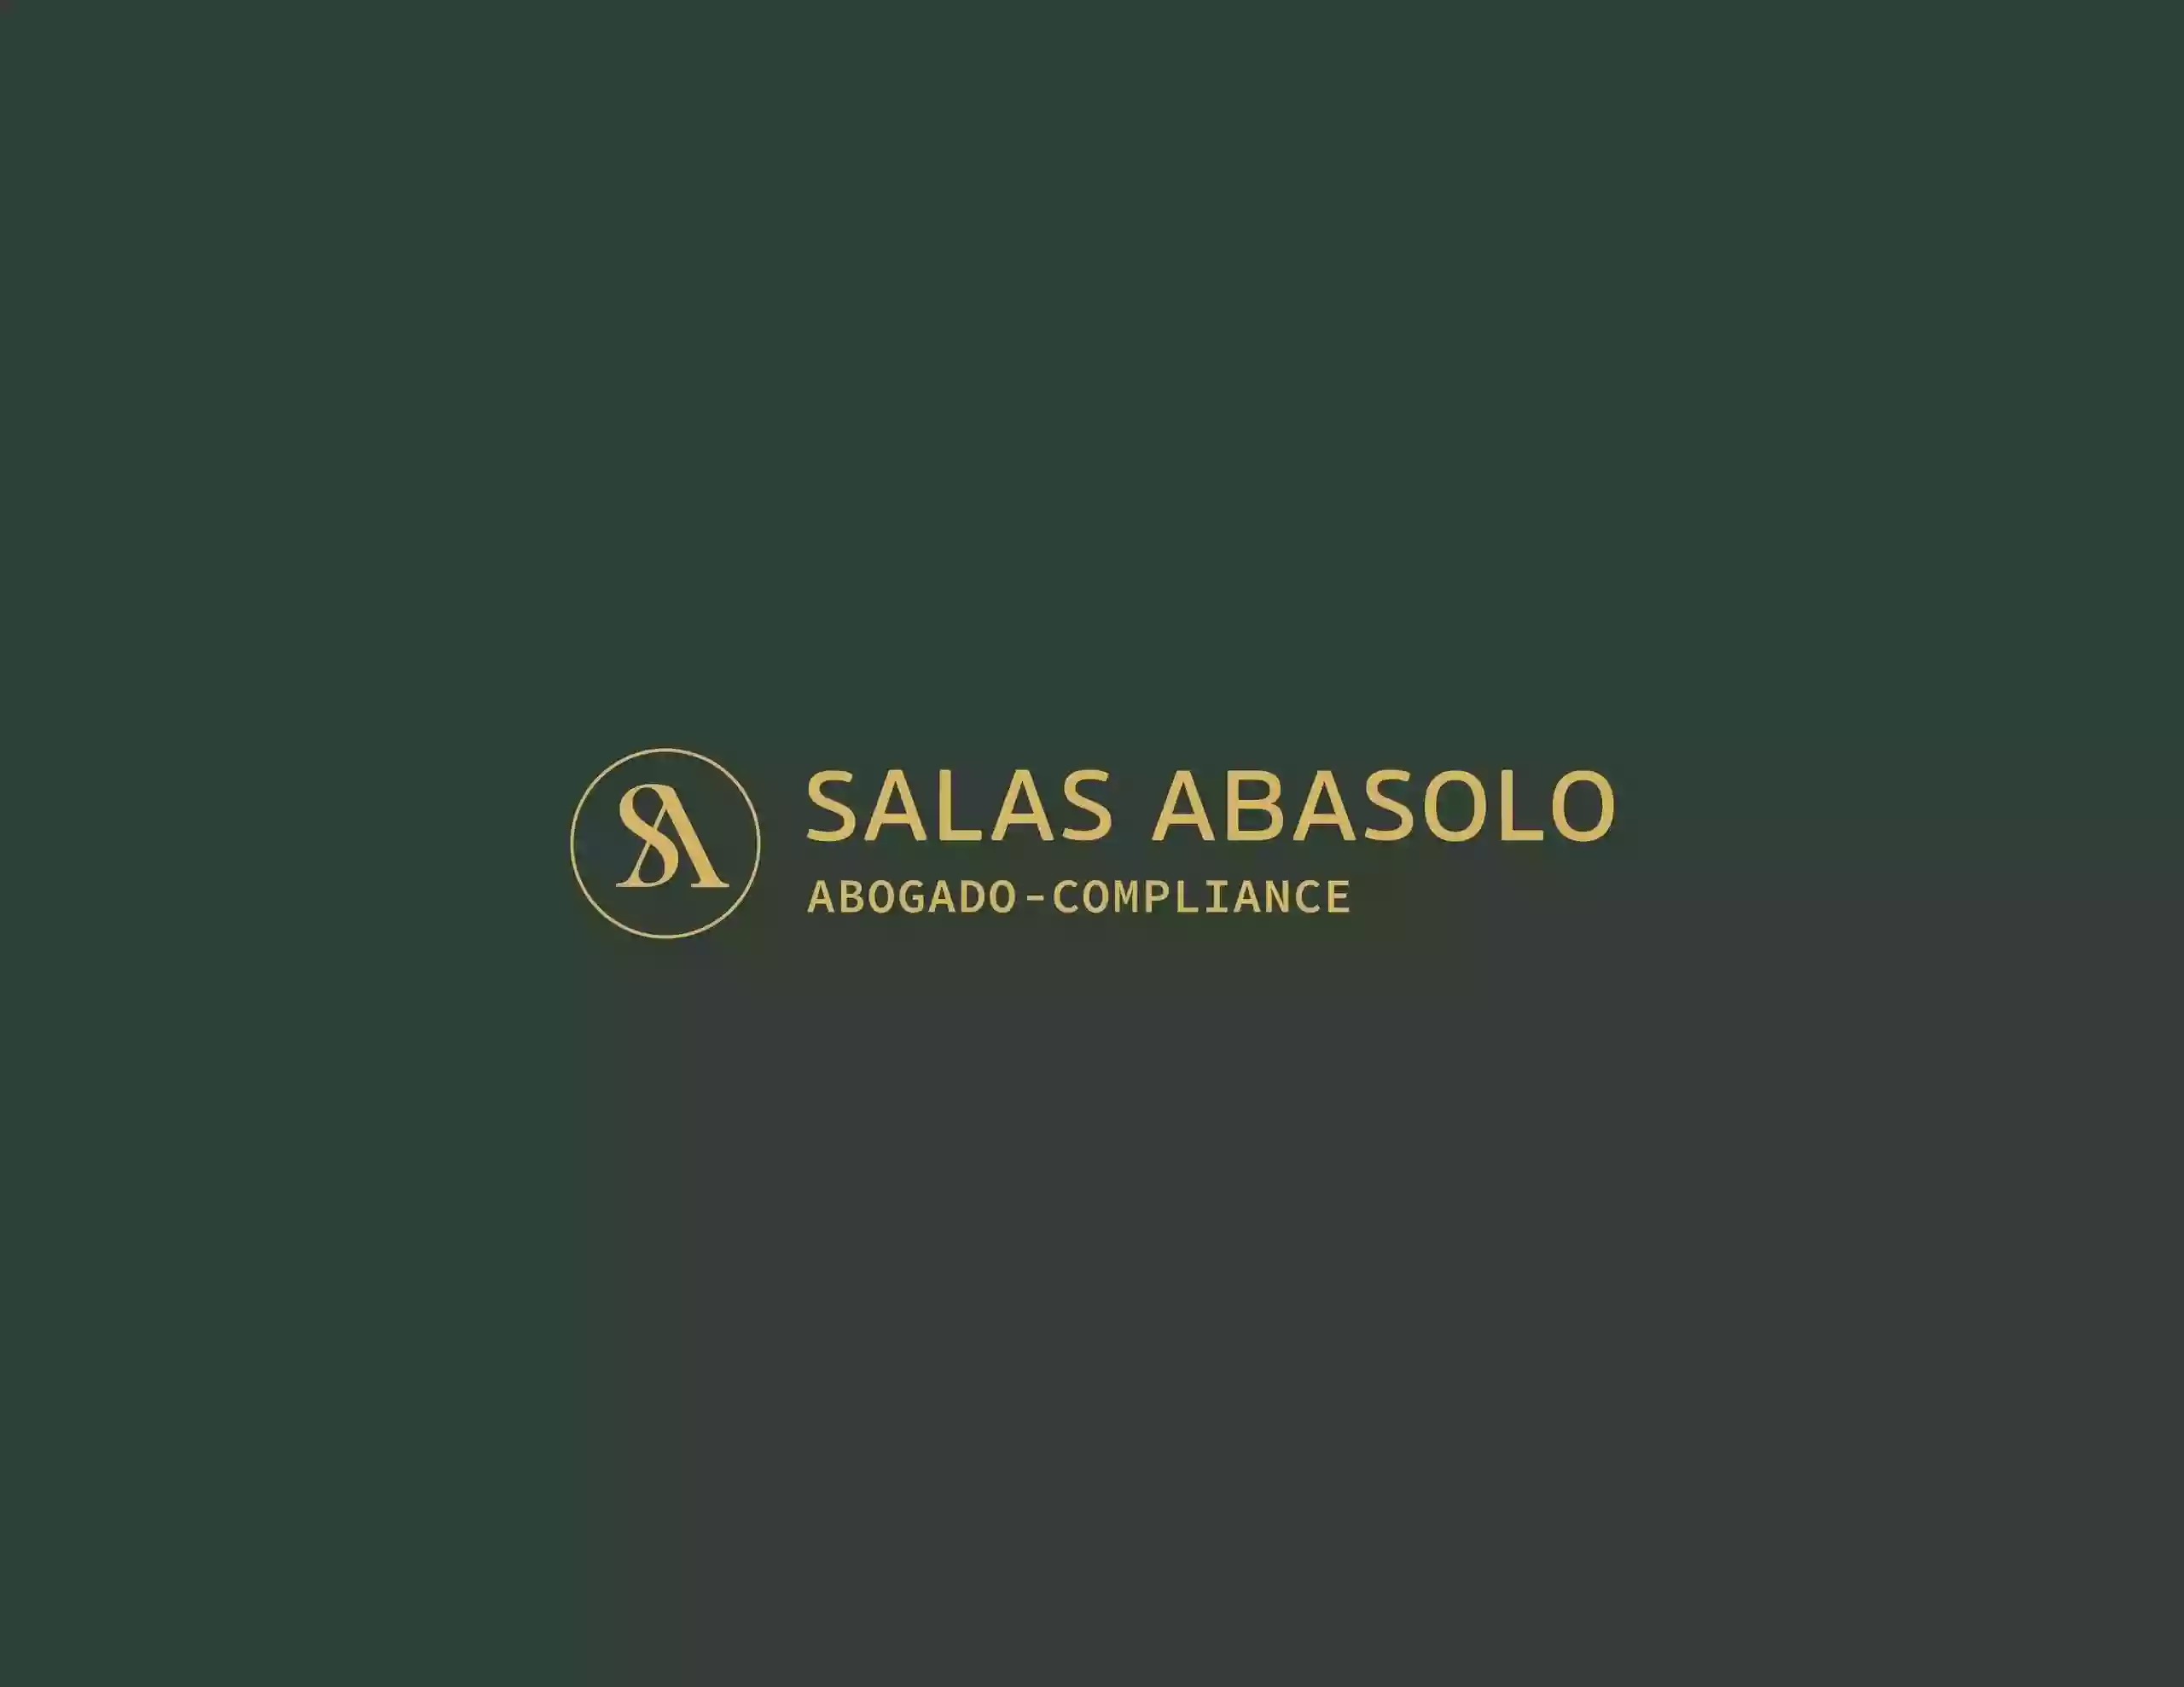 SALAS ABASOLO ABOGADO-COMPLIANCE